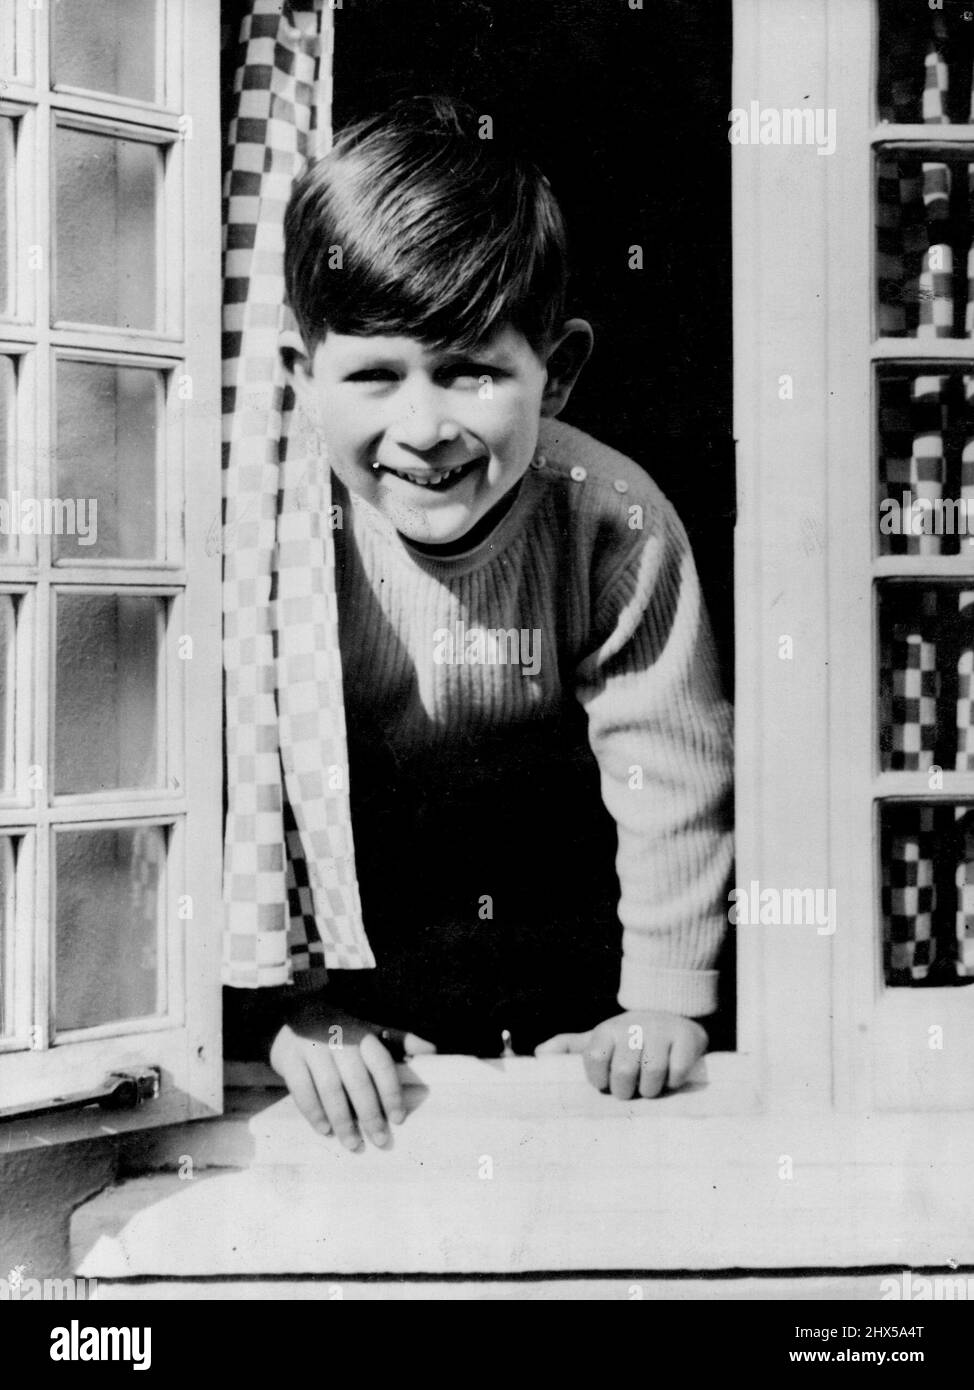 Glückliche Prinzen -- Dieses glückliche Bild von Prinz Charles wurde von der königlichen Fotografin Lisa aufgenommen, als der junge Prinz aus dem Küchenfenster des walisischen Hauses in der Royal Lodge Windsor schaute. 22. April 1954. (Foto von Paul Popper Ltd.). Stockfoto